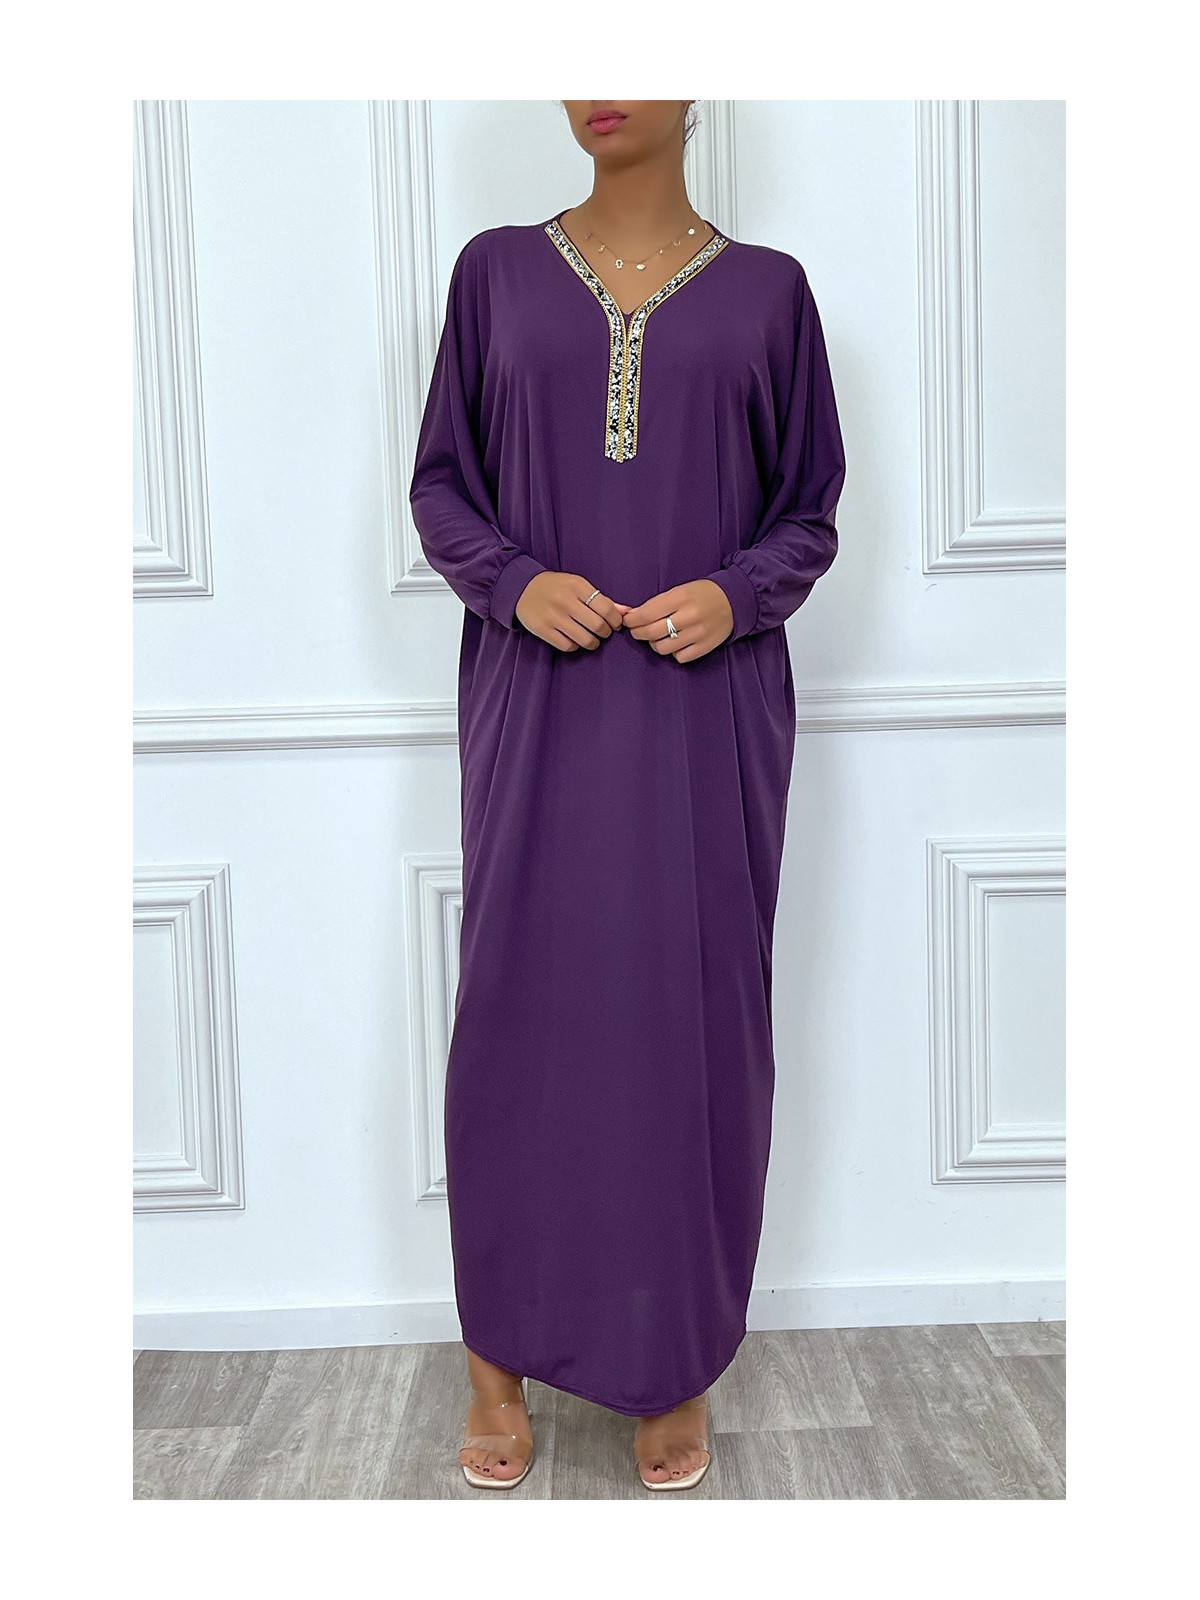 Abaya violet à encolure de strass et manches longues - 4